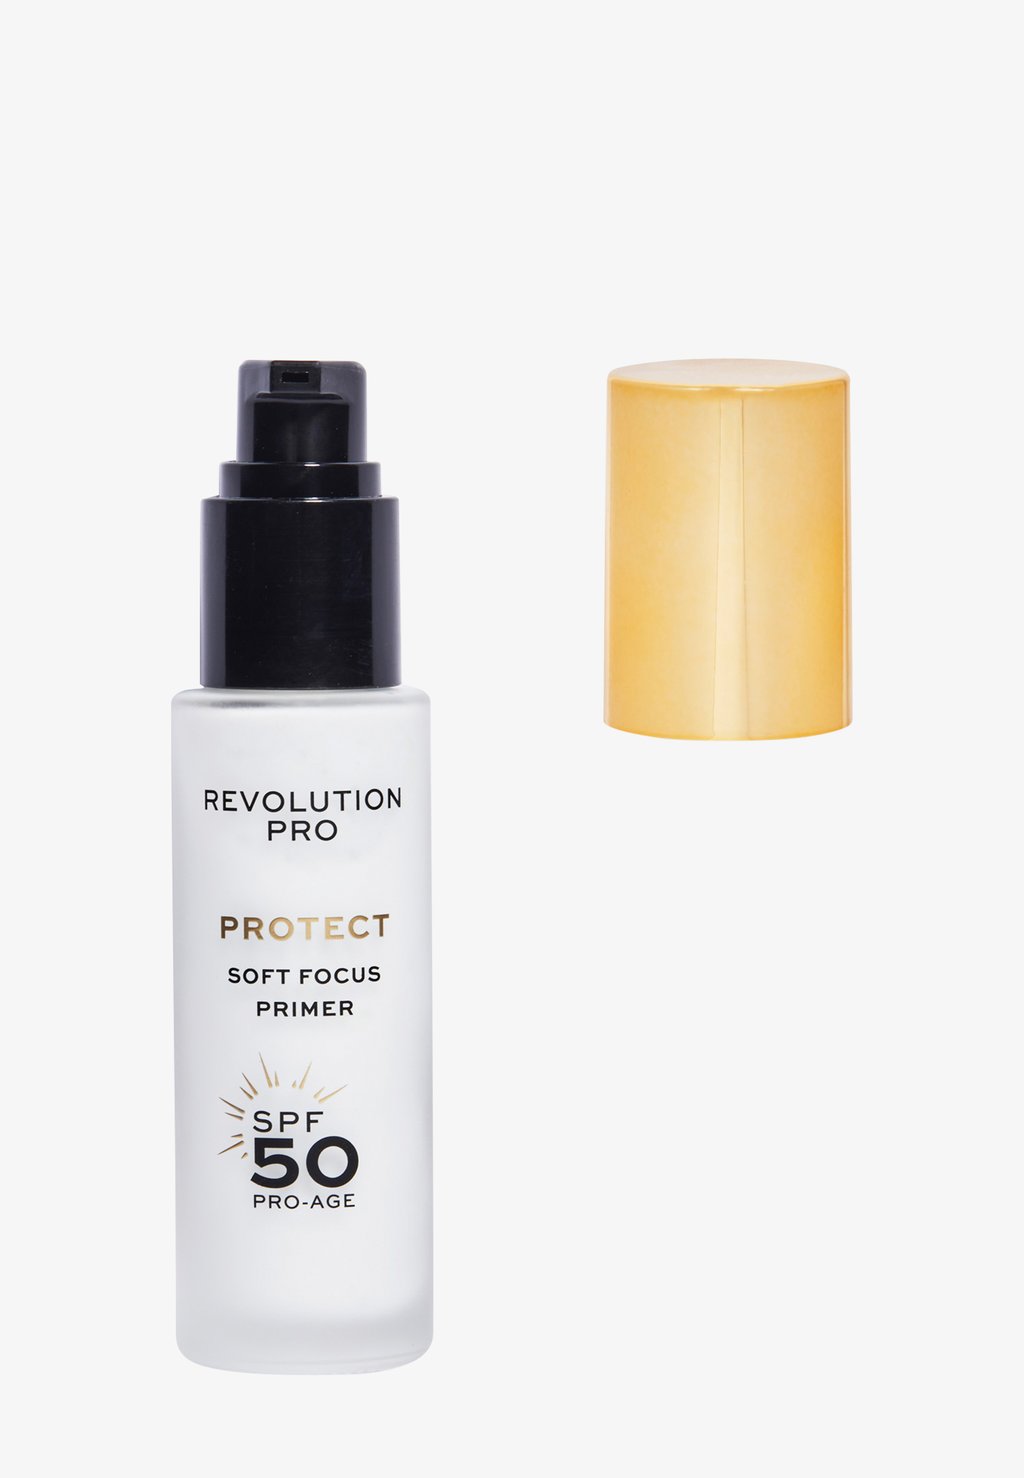 Праймер Revolution Pro Protect Soft Focus Primer Spf 50 Revolution PRO, белый